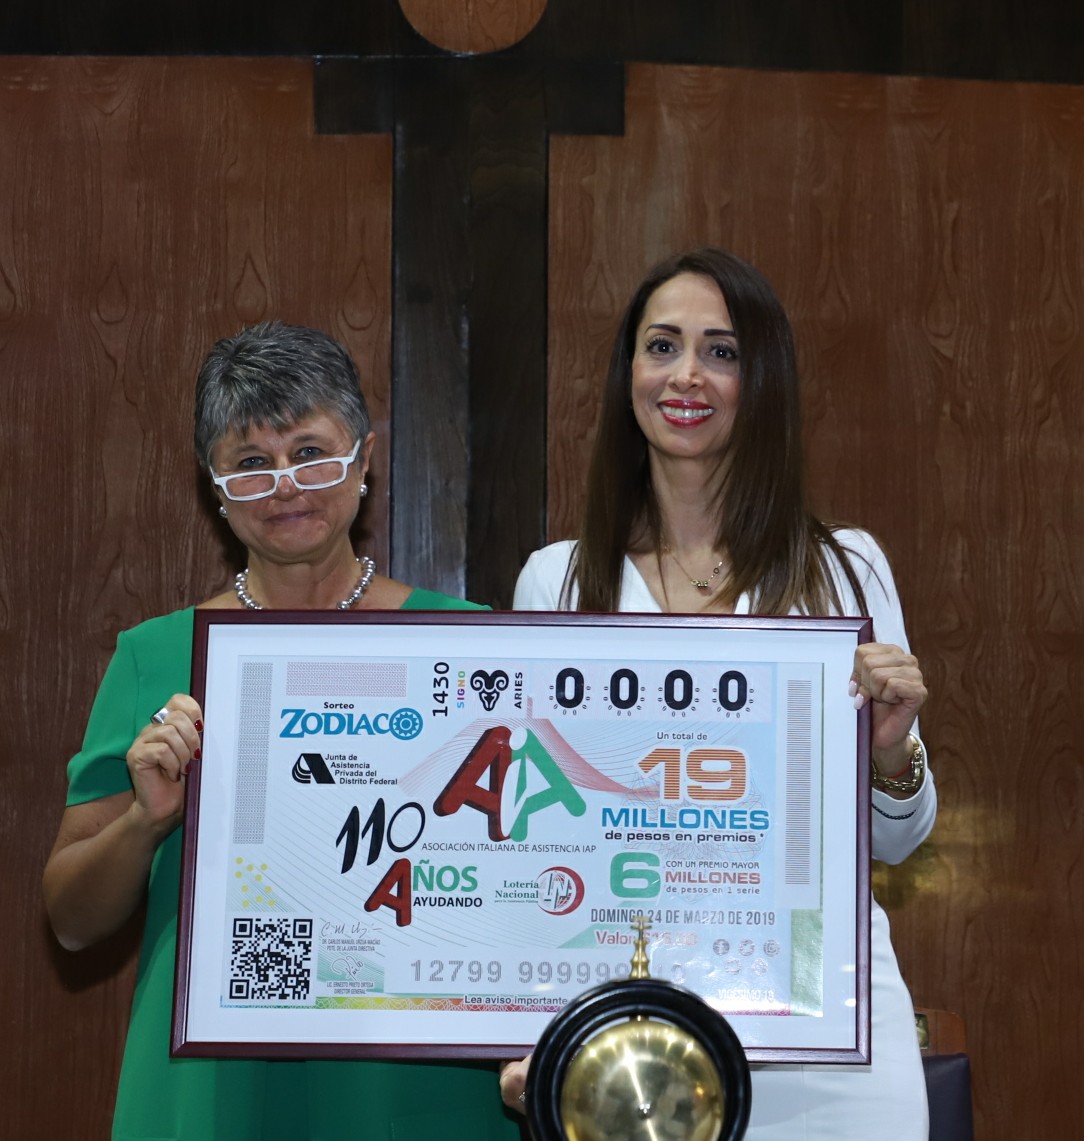 Fotografía donde posan con el billete del Sorteo Zodiaco, de izquierda a derecha: Regina Casalini y Raquel Ordóñez Ruiz.